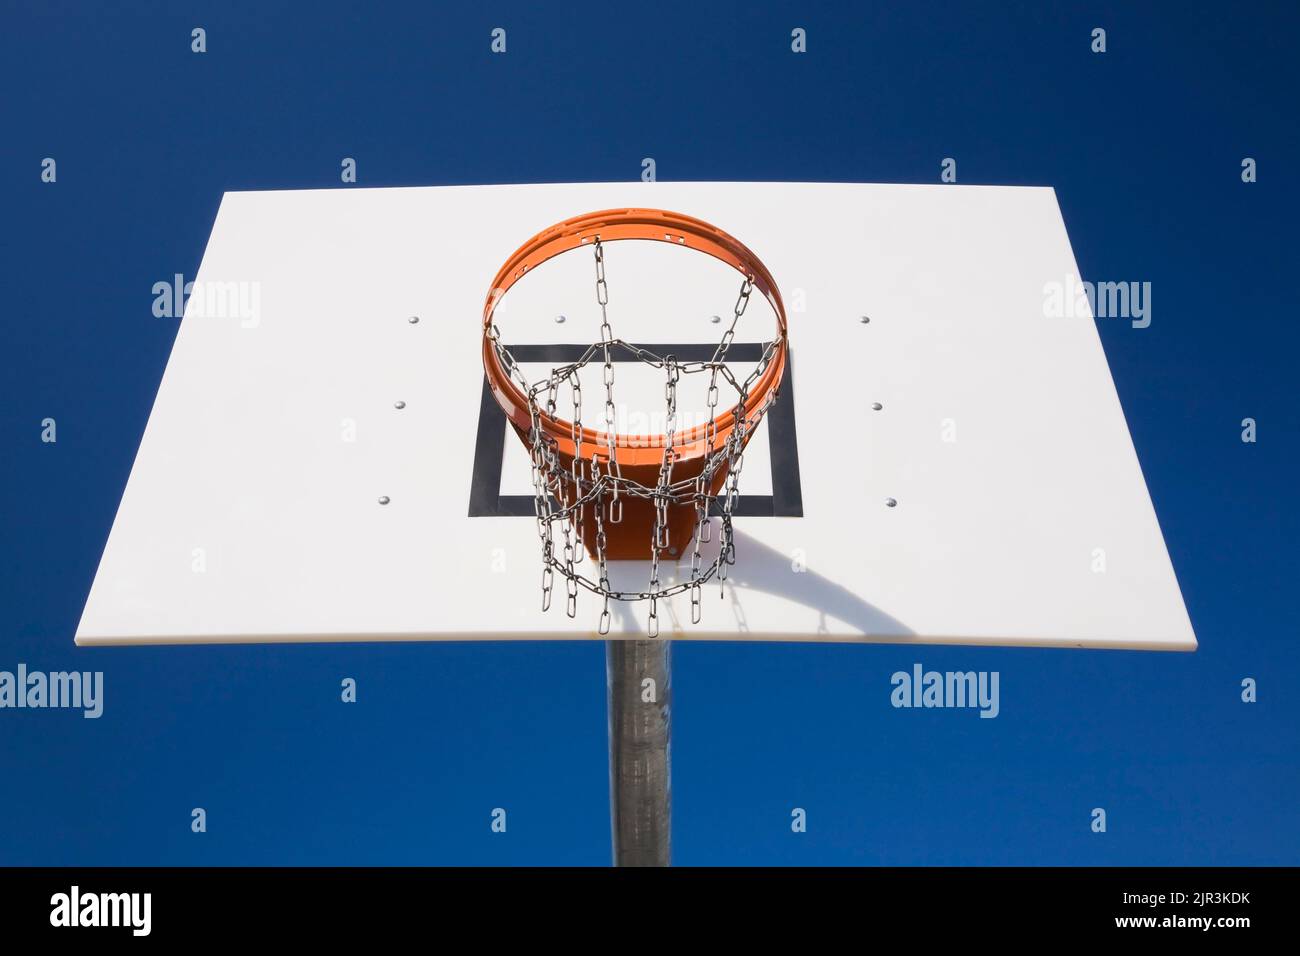 Basketballkorb gegen einen blauen Himmel. Stockfoto